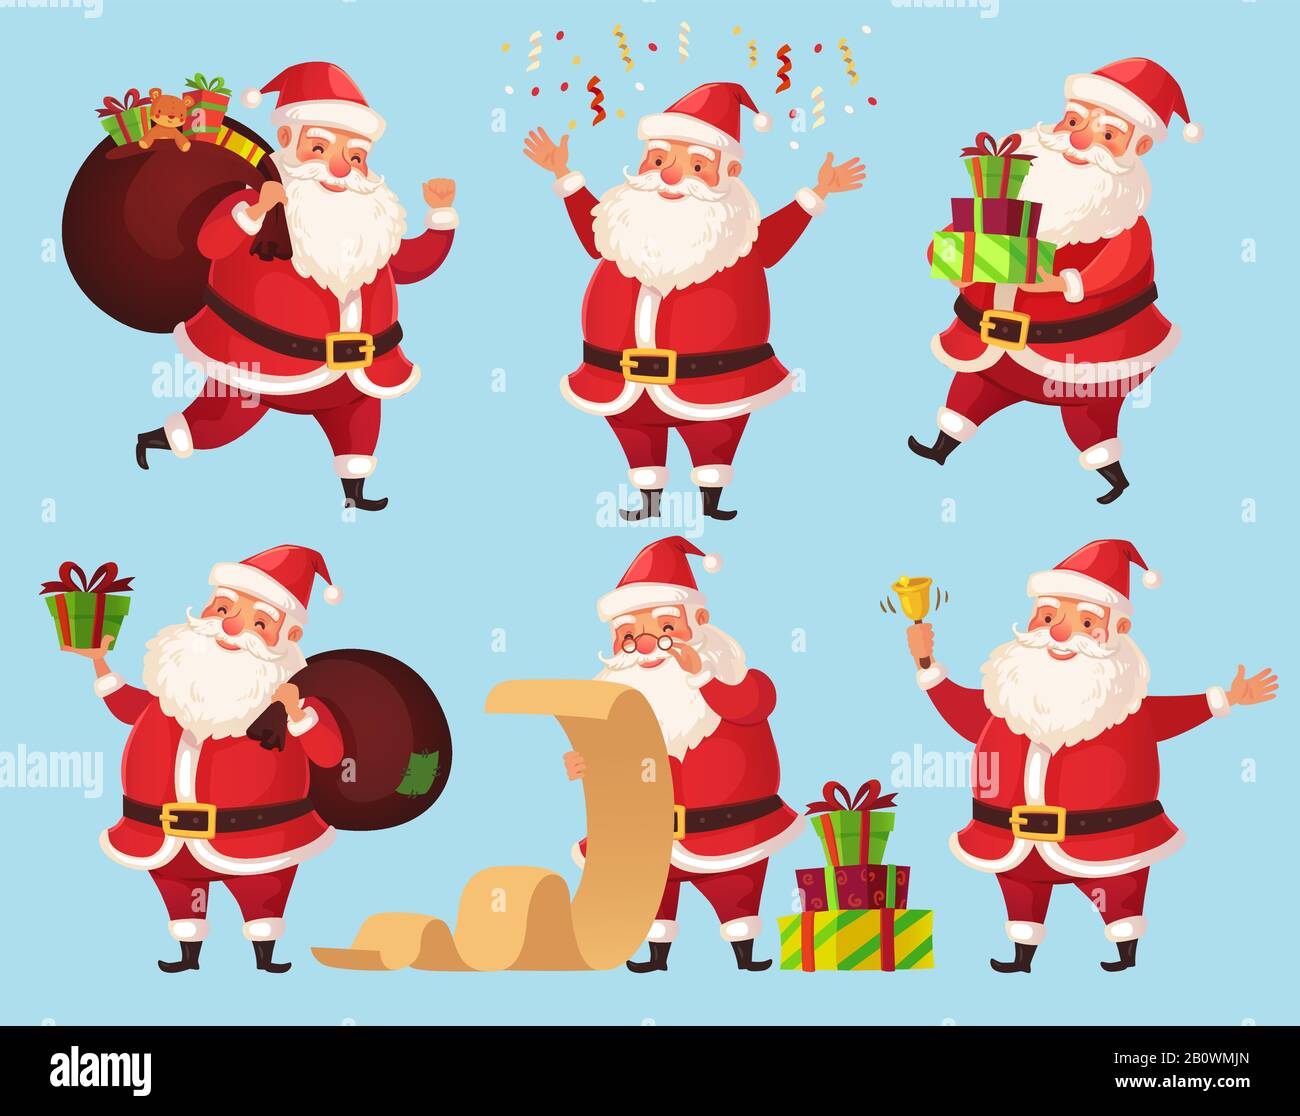 Christmas Santa cartoon character. Funny Santa Claus with Xmas presents, winter holiday characters vector illustration set Stock Vector